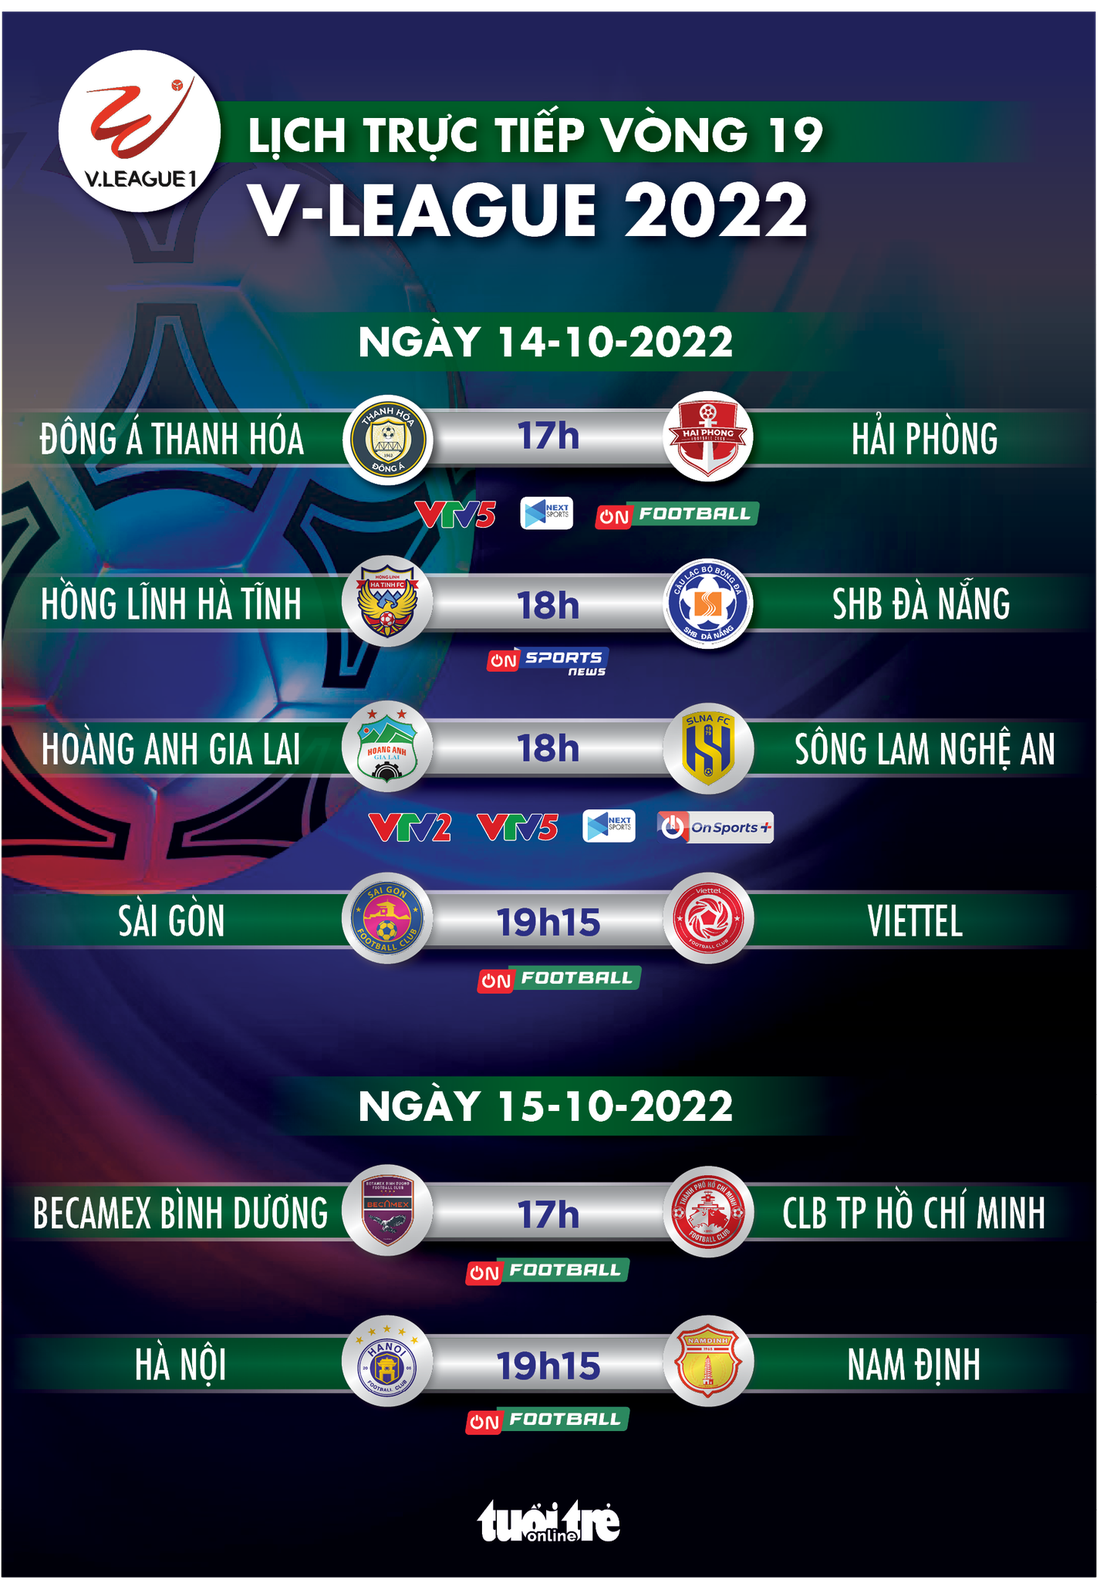 Lịch trực tiếp vòng 19 V-League 2022: HAGL - SLNA, Bình Dương - CLB TP.HCM - Ảnh 1.